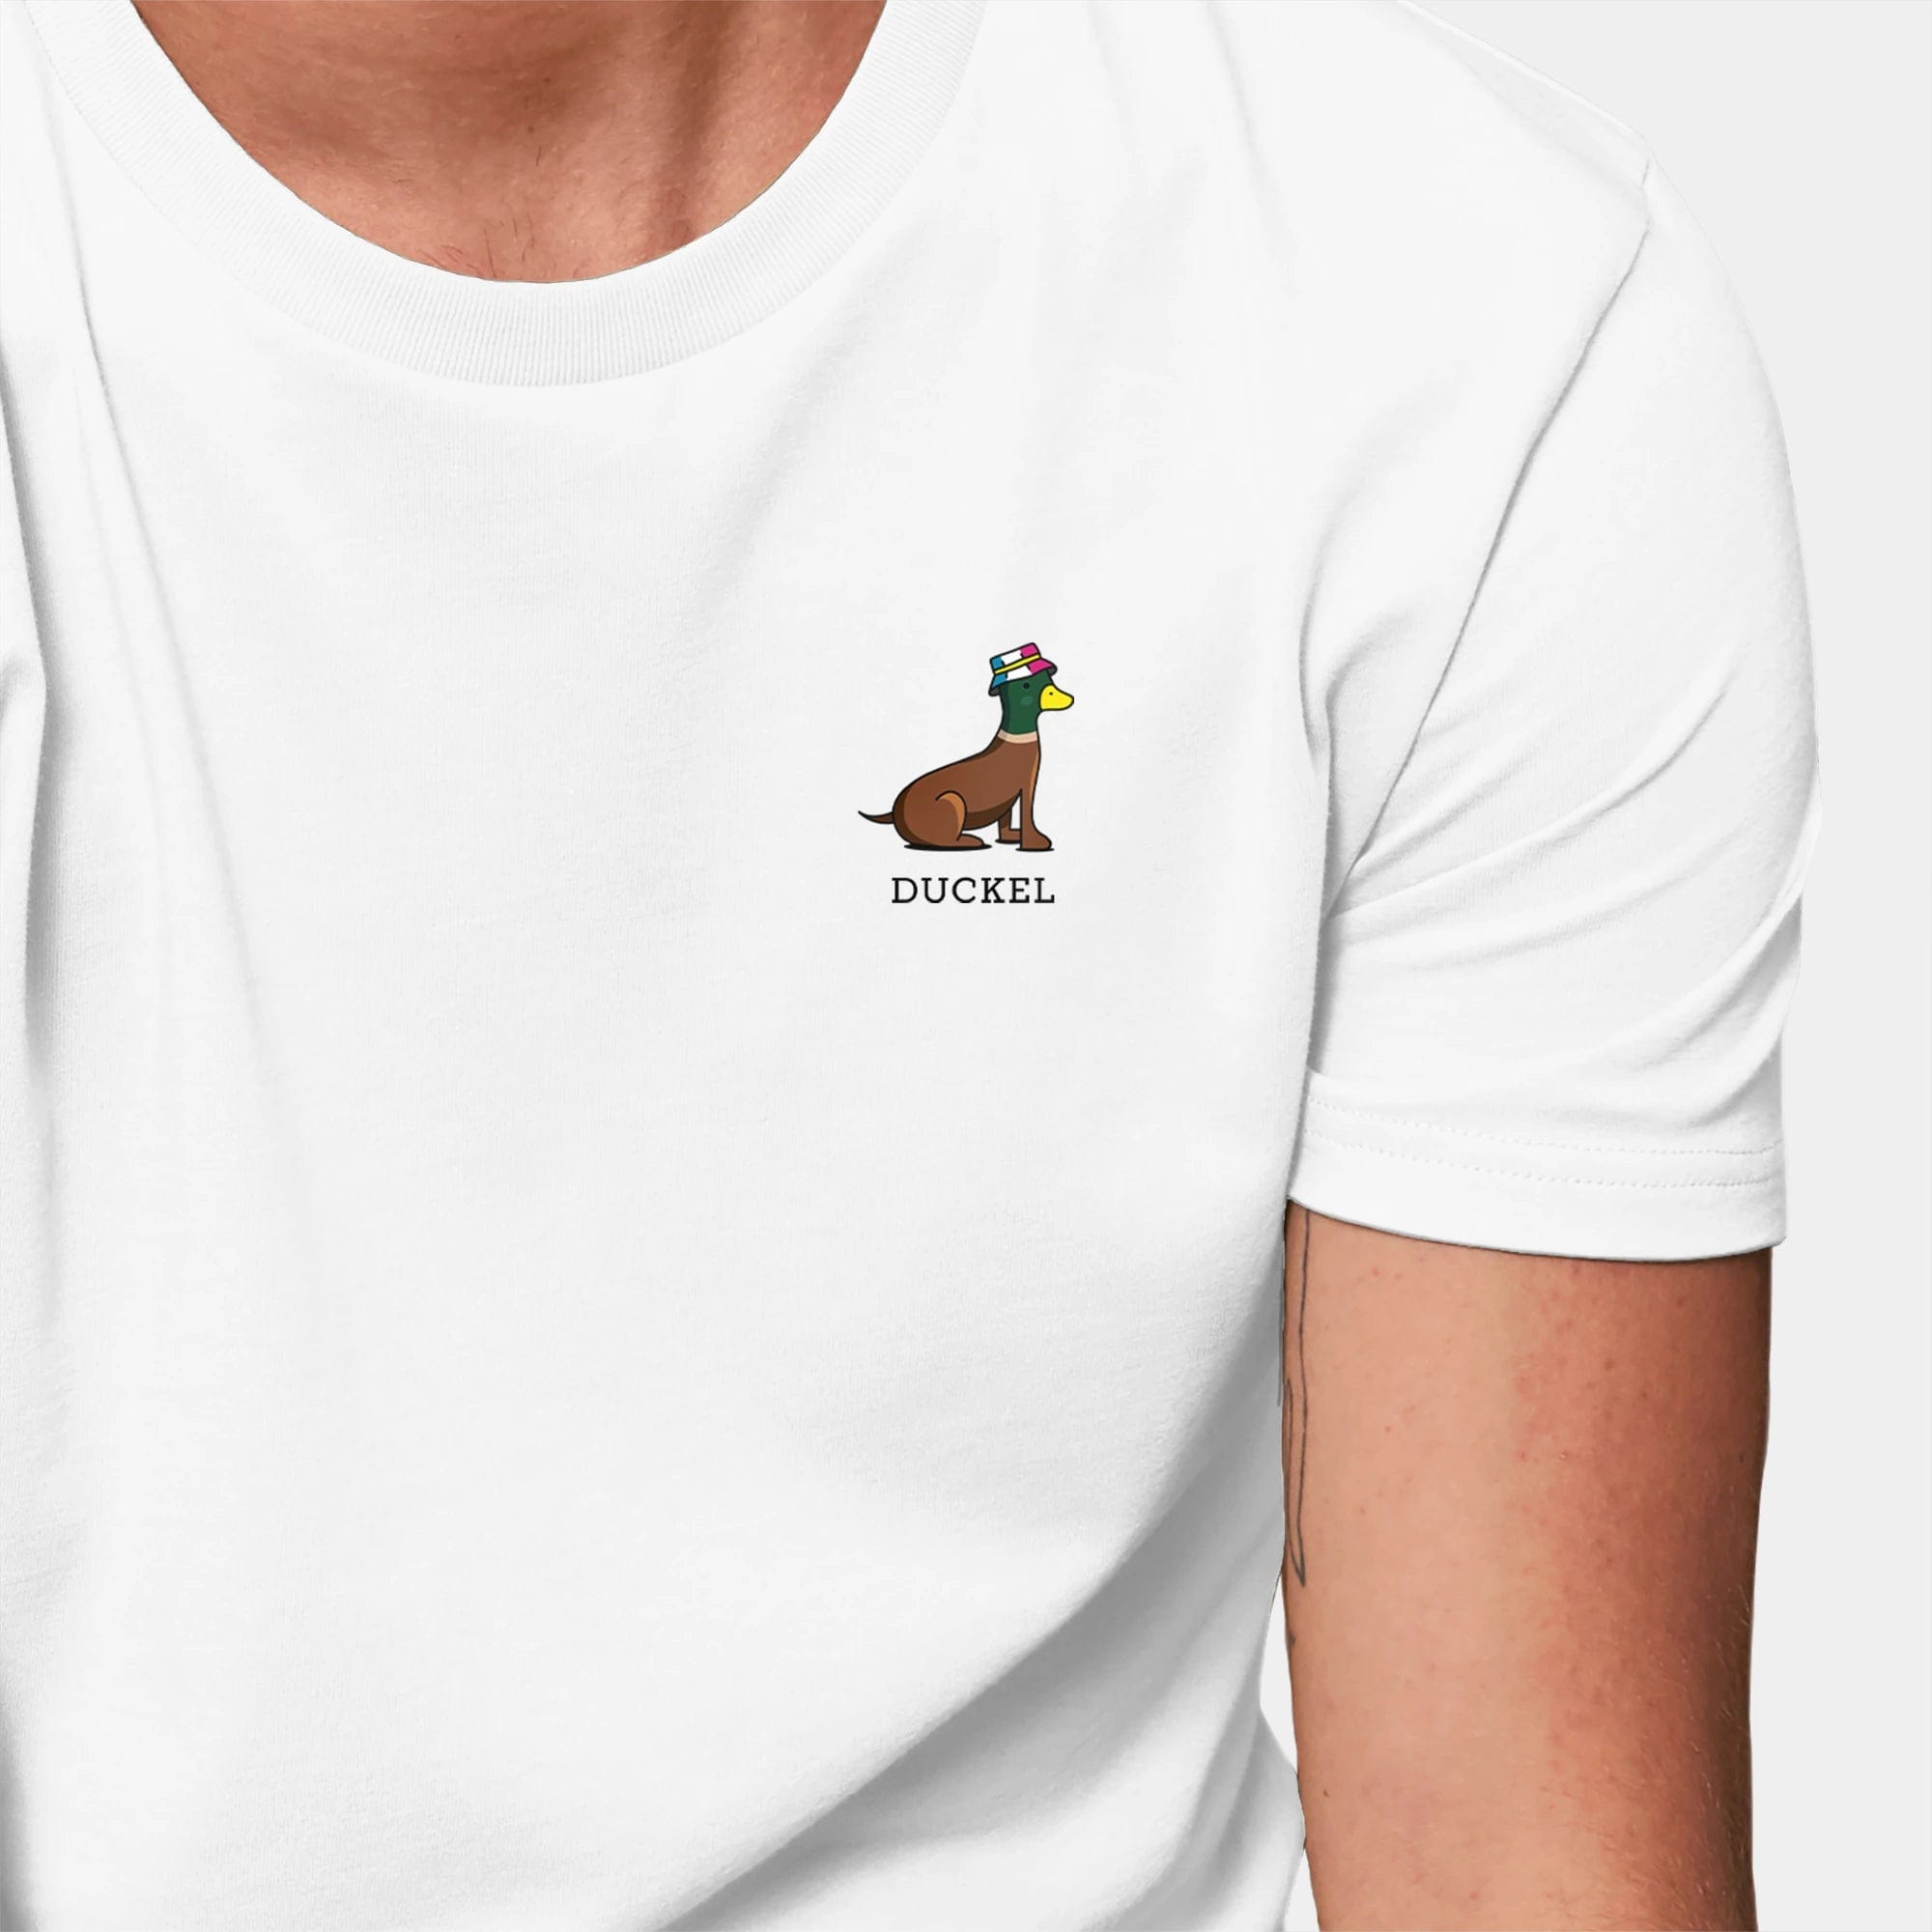 HEITER & LÄSSIG T-Shirt "Duckel" XXS / weiß - aus nachhaltiger und fairer Produktion